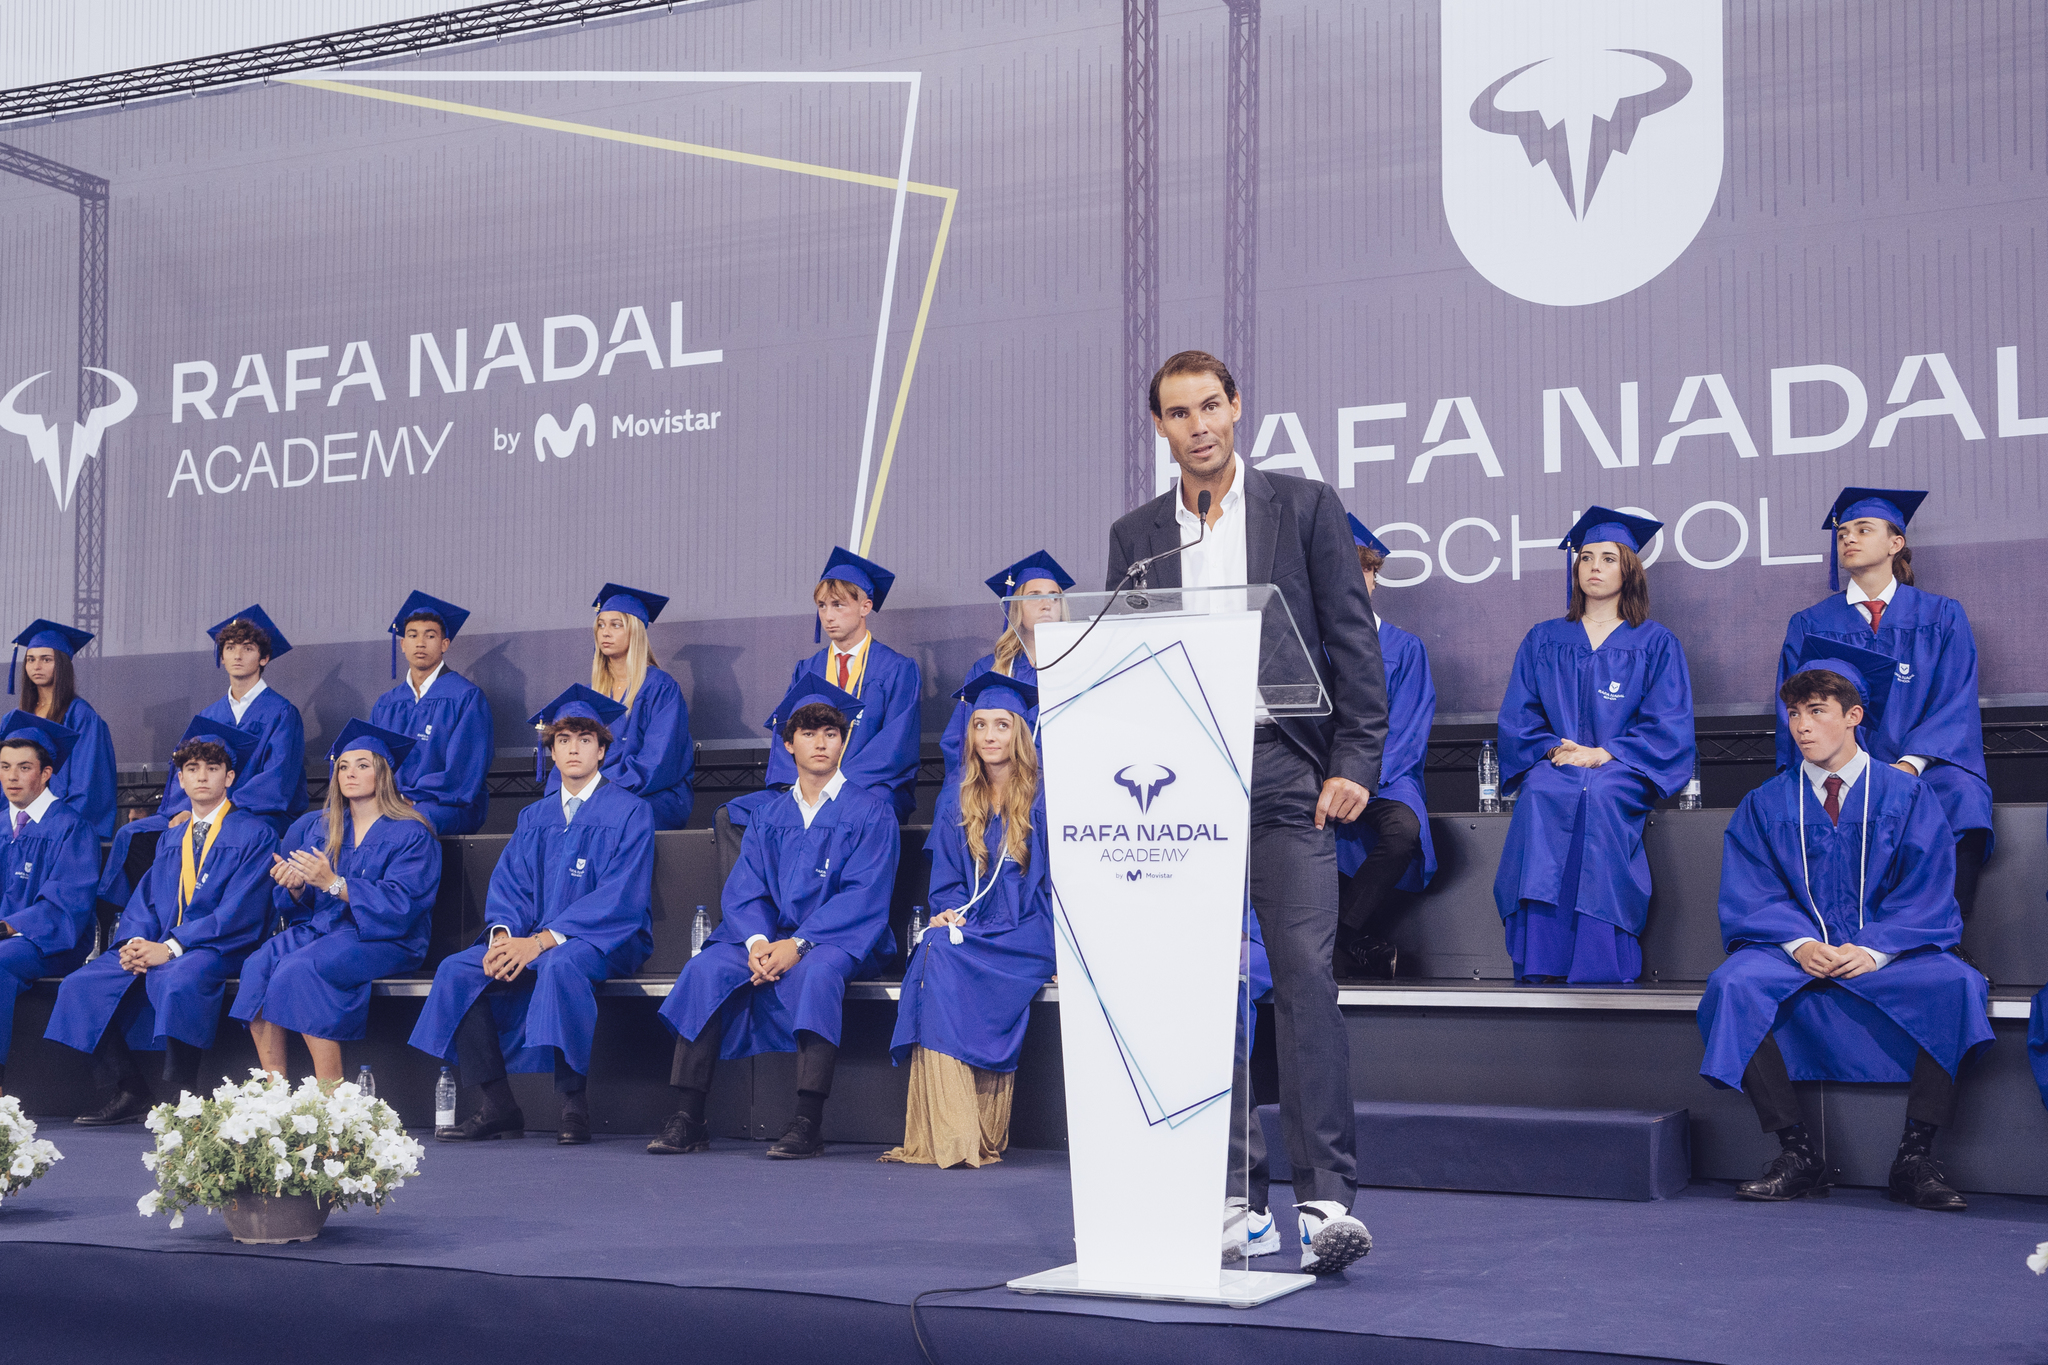 Rafa Nadal y su motivador discurso que se ha hecho viral: "Los grandes objetivos se consiguen luchando"